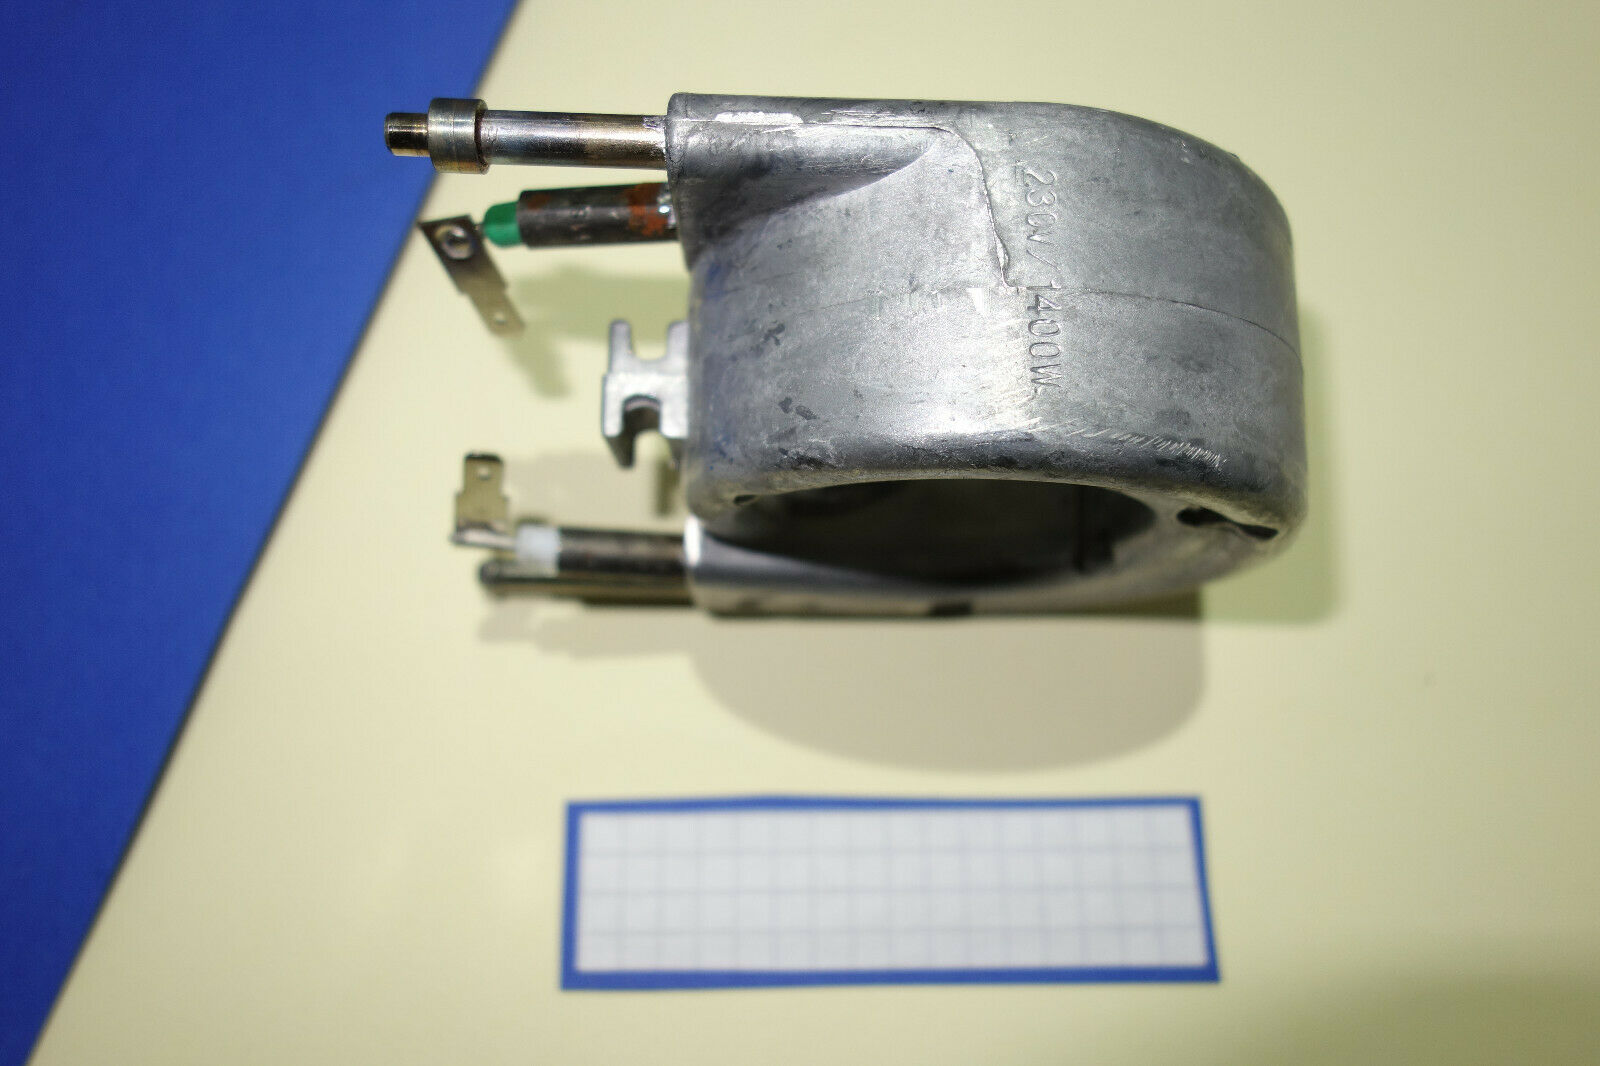  Jura - Boiler Durchlauferhitzer 230V / 1400W Impresa Rotel  Nivona